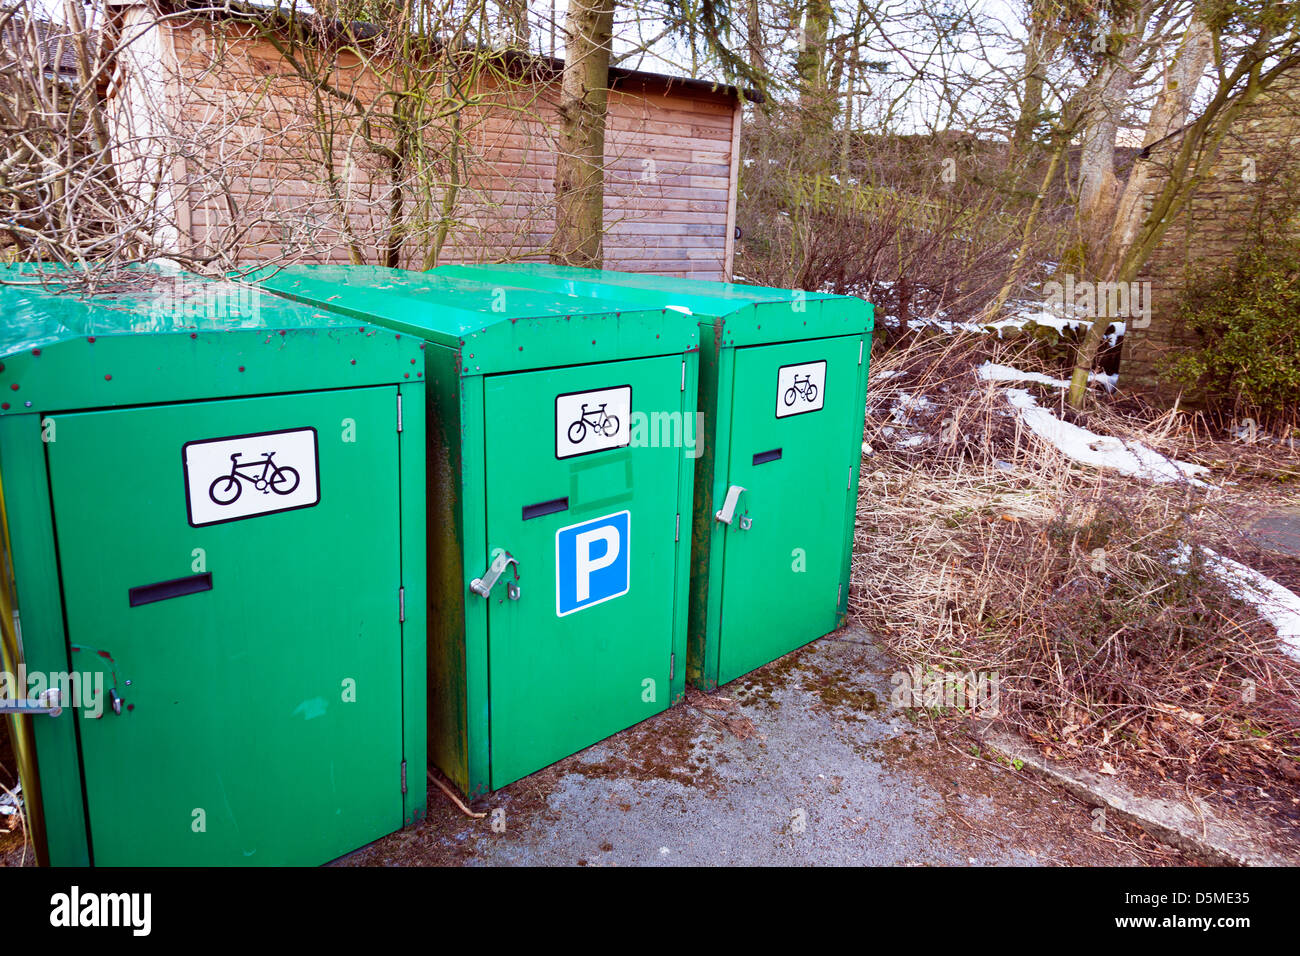 Laufrad Push Bike Fahrrad sicher Park Parkplatz um Ihr Fahrrad Yorkshire Dales, UK, England zu verlassen Stockfoto